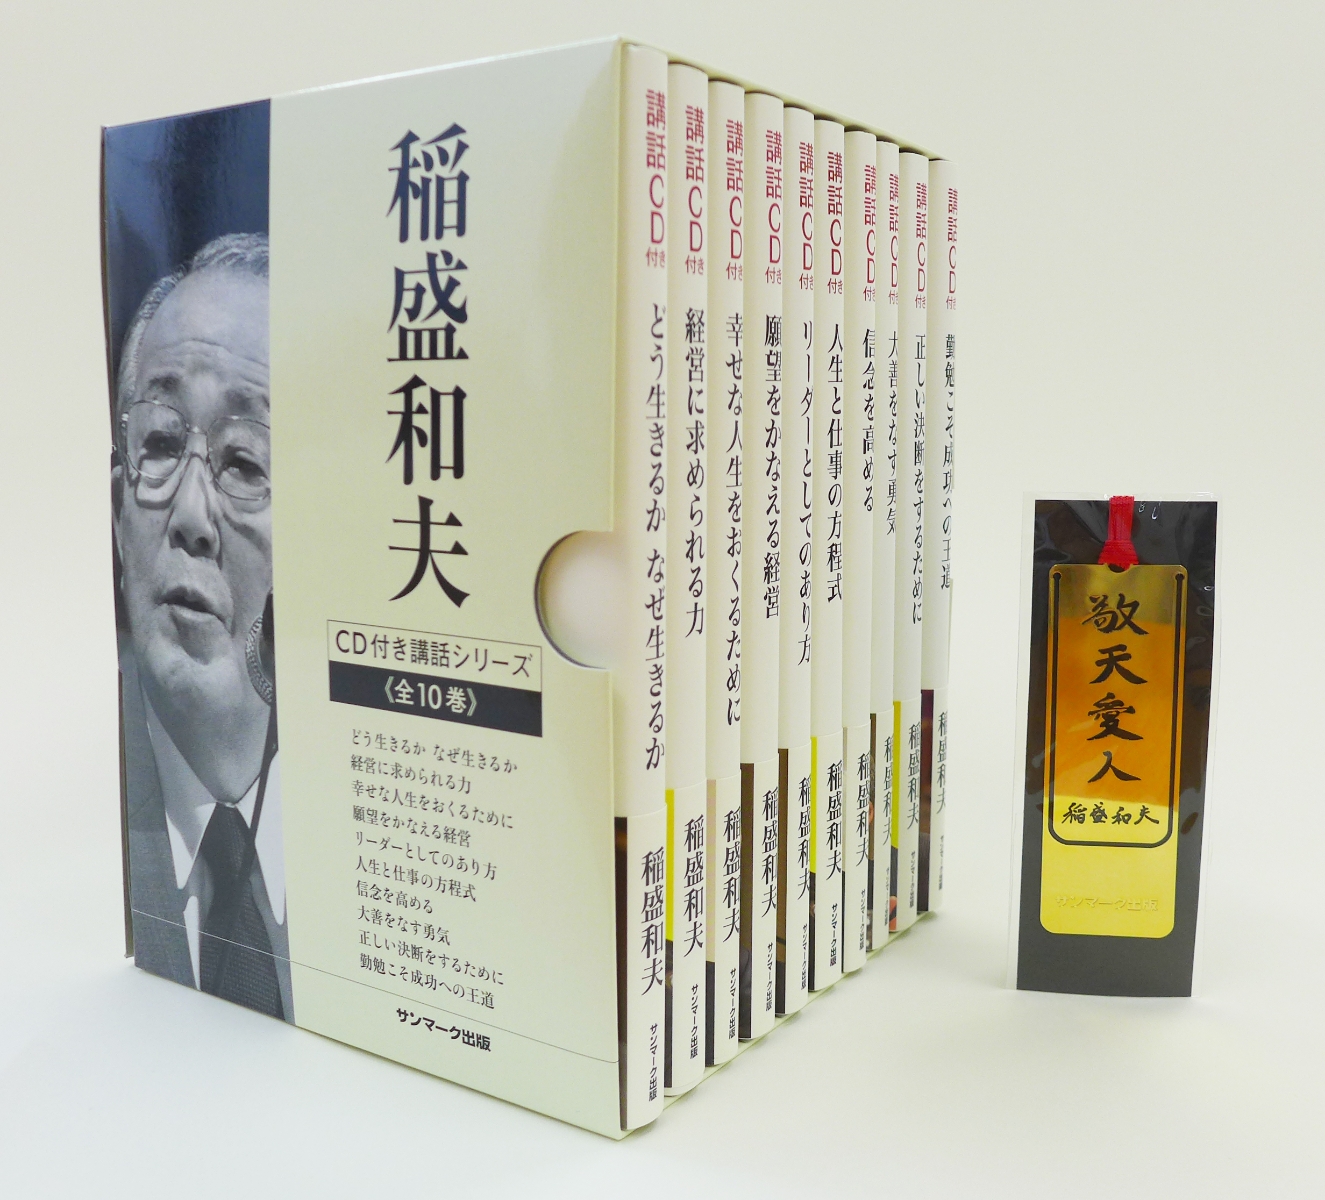 楽天ブックス: 【特典】稲盛和夫 CD付き講話シリーズ全10巻セット